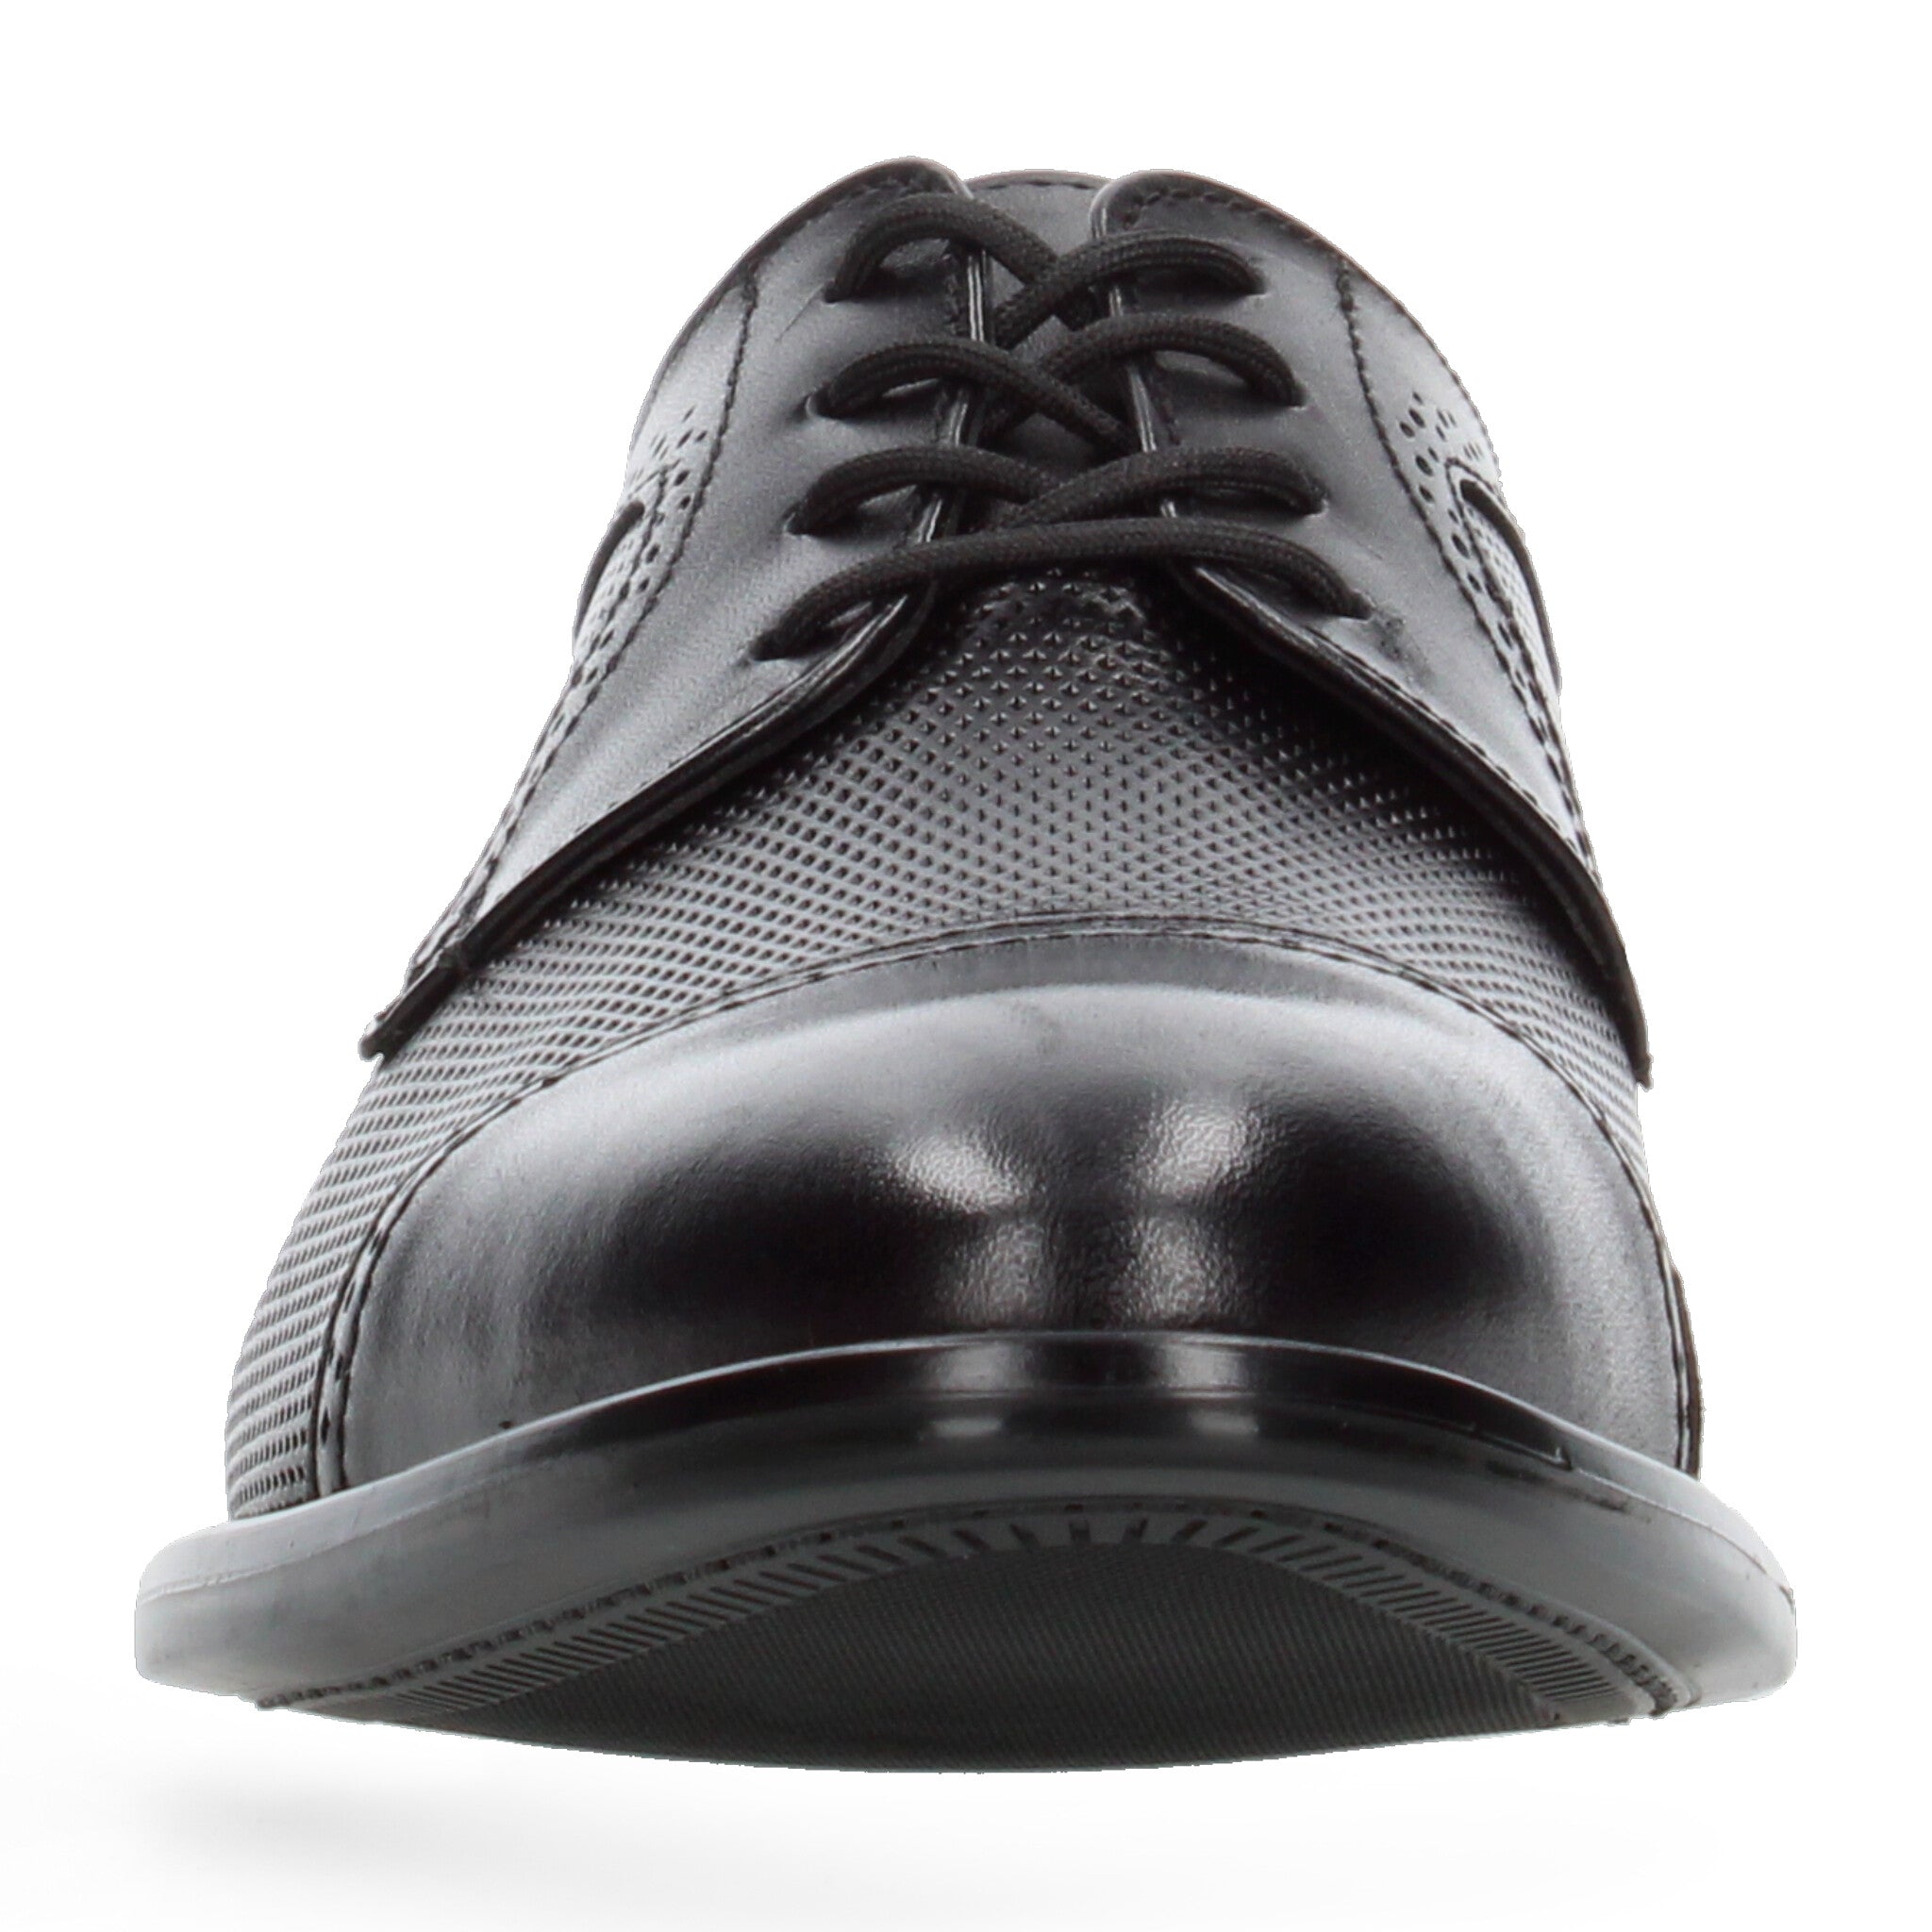 Zapato Casual Gino cherruti Negro para Hombre [GCH357] GINO CHERRUTI 